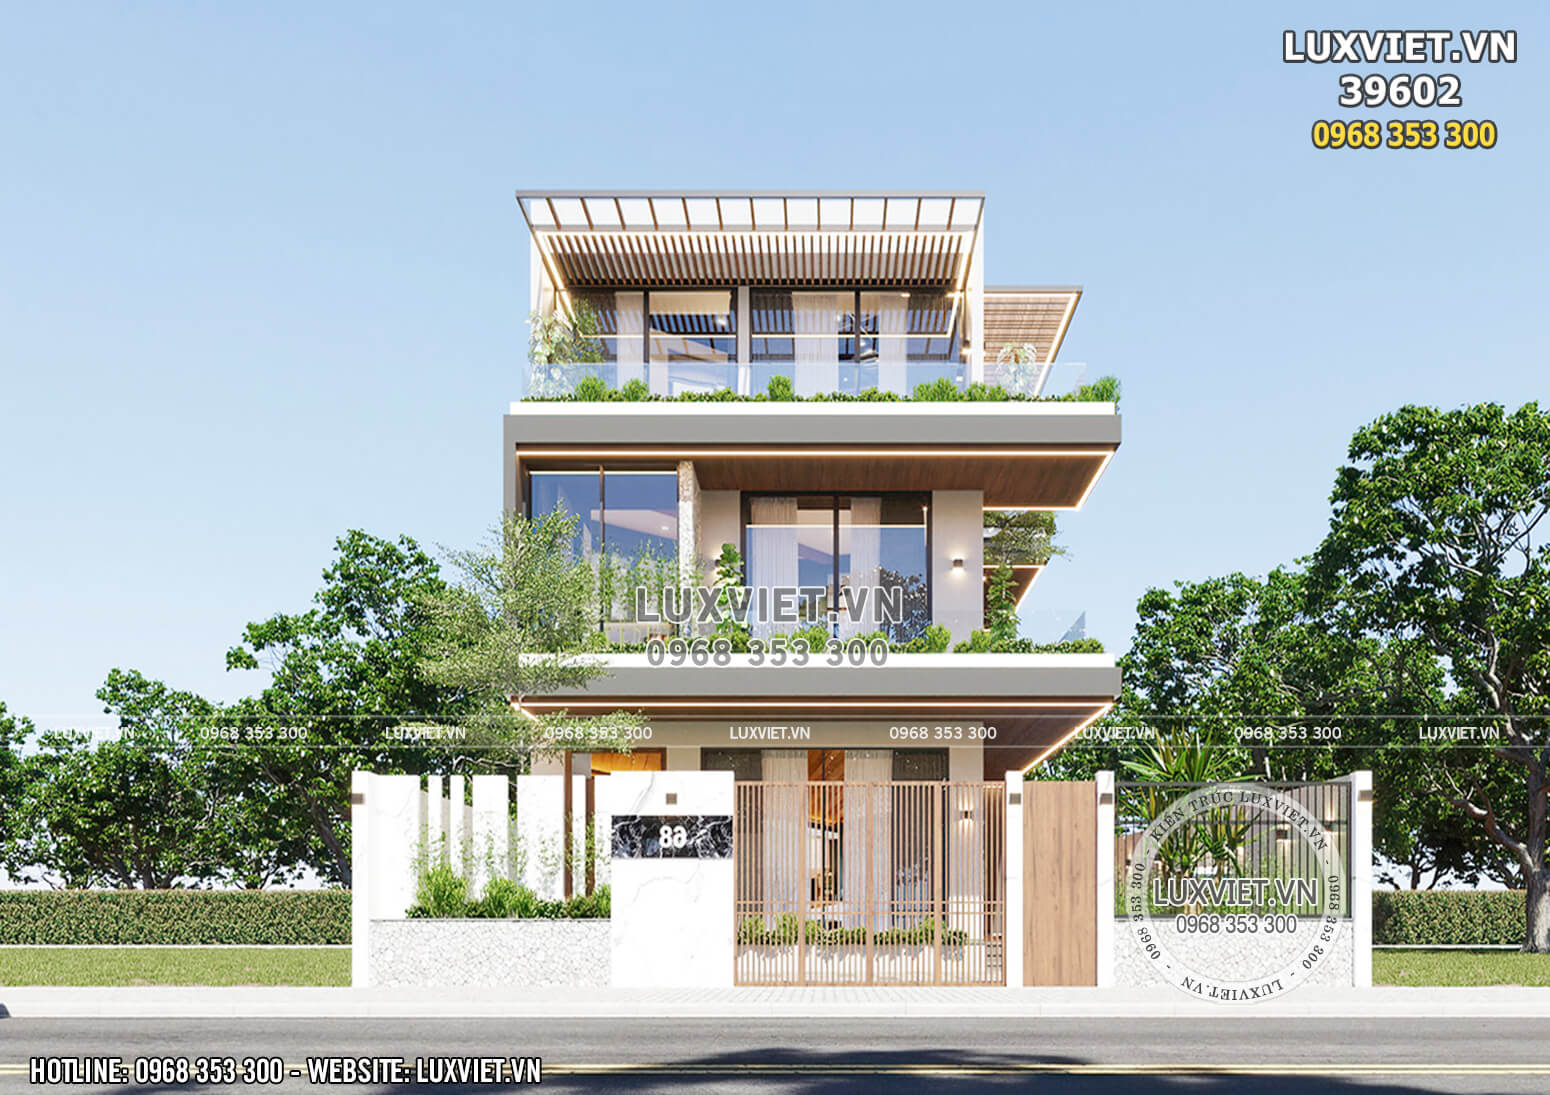 Thiết kế biệt thự villa hiện đại 3 tầng đẹp tại Đà Nẵng - LV 39602